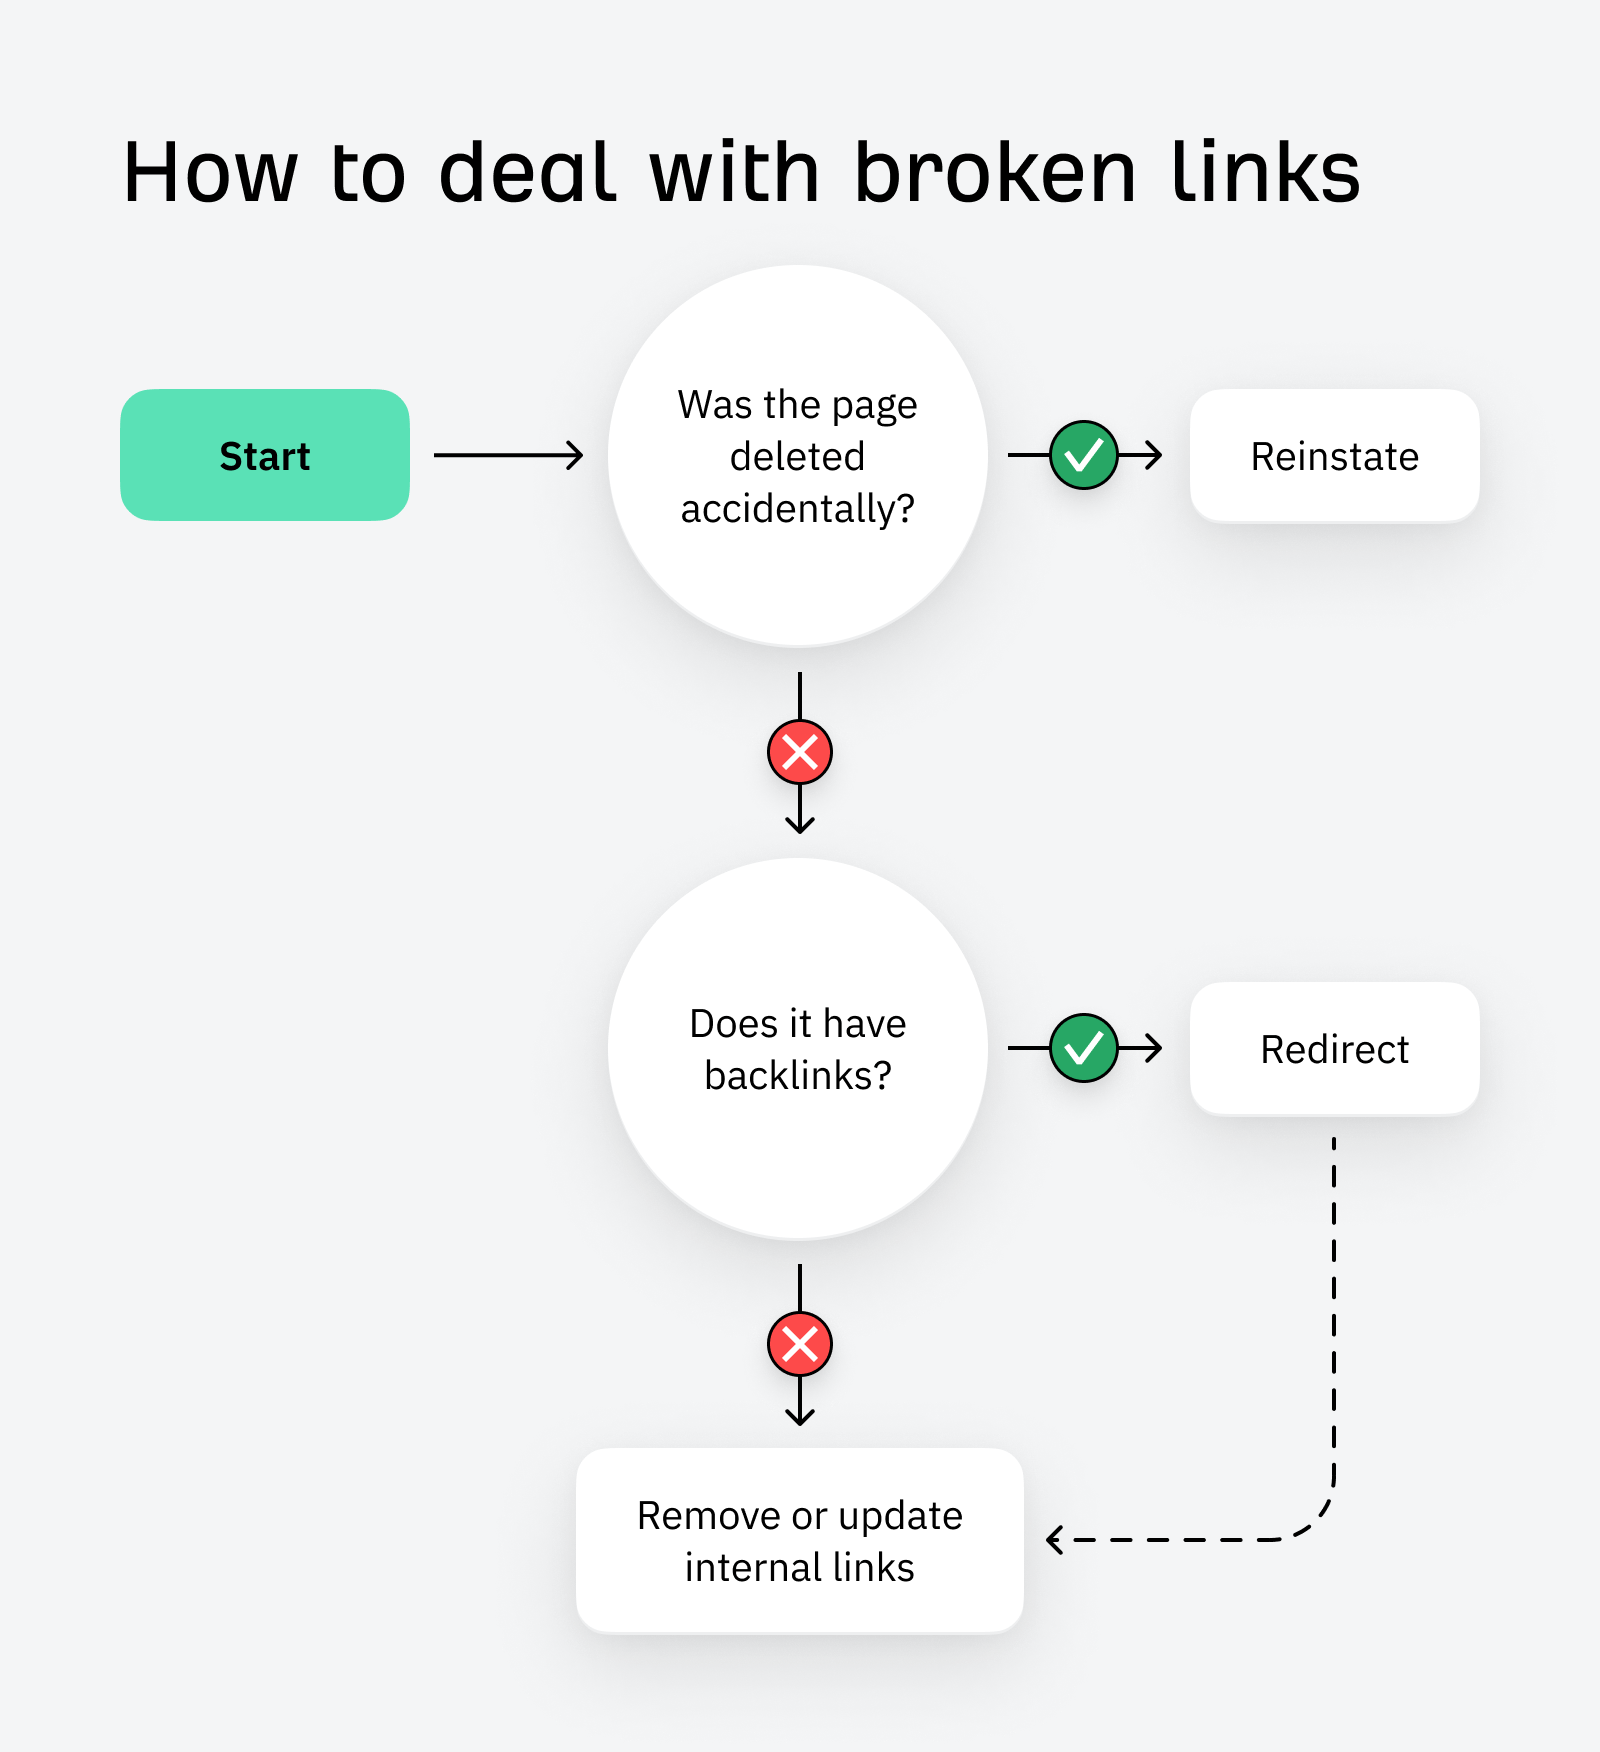 How to deal with broken links - flowchart.